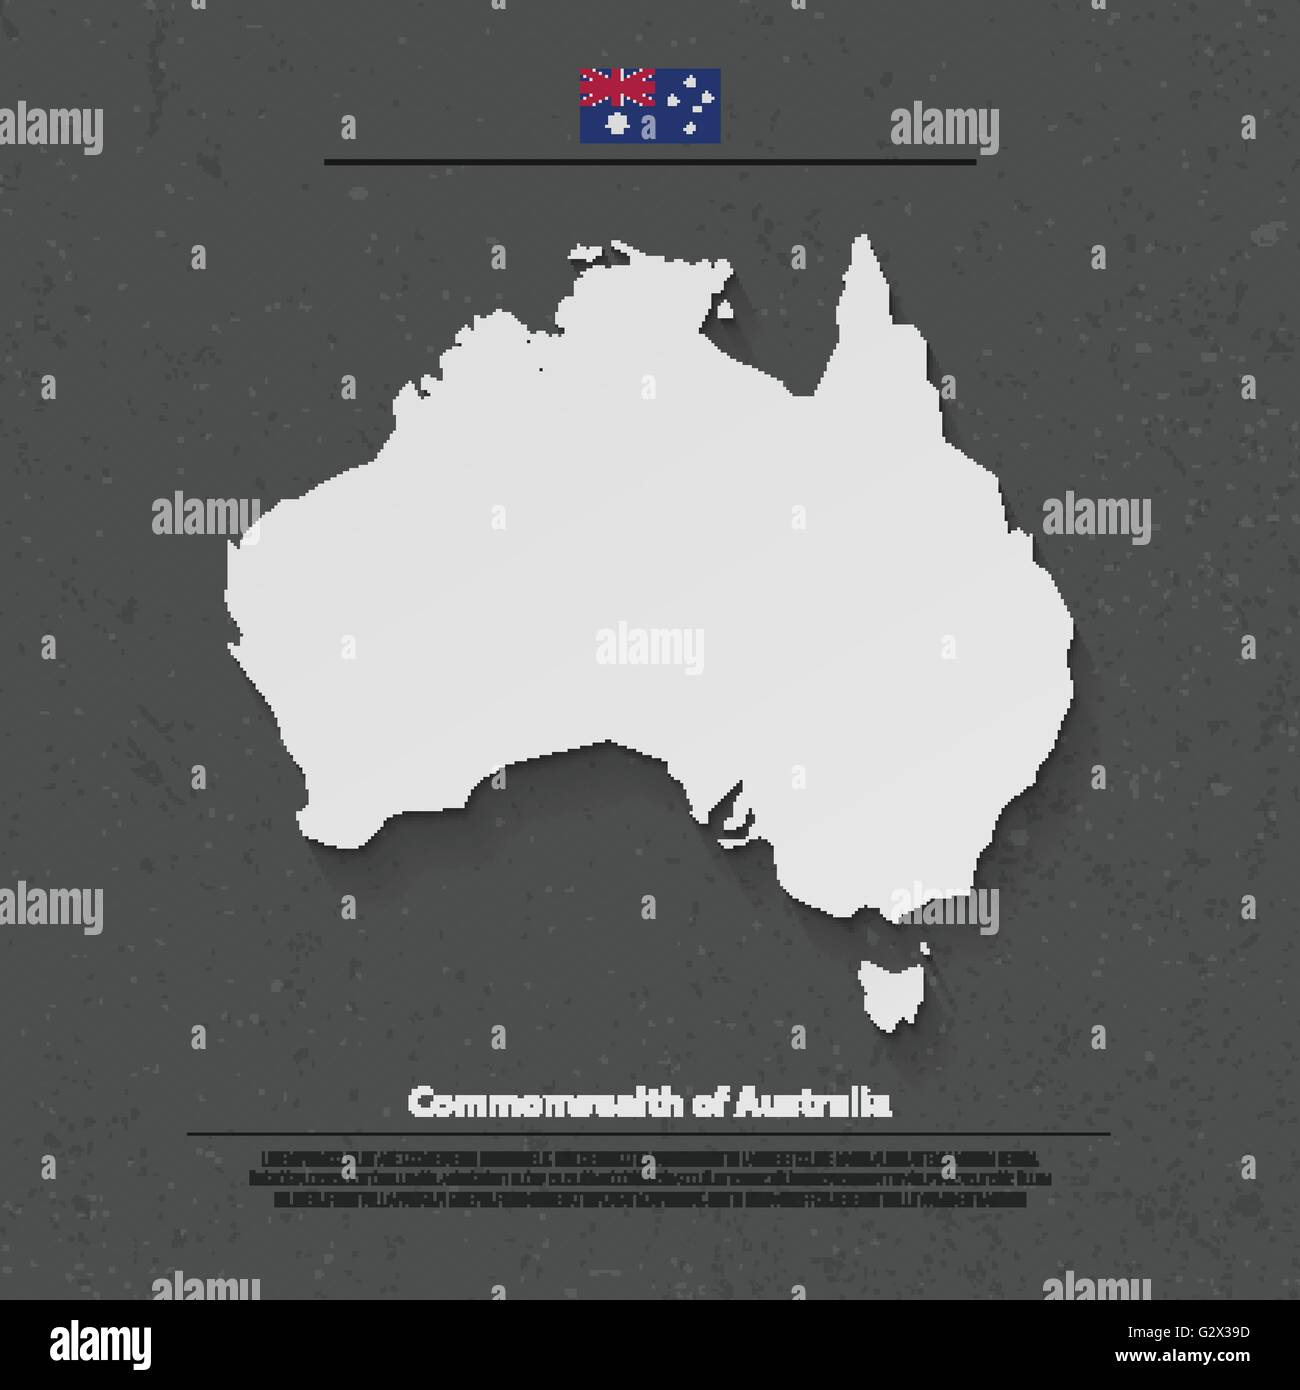 Commonwealth of Australia mappa isolato e bandiera ufficiale icone. vettore politico australiano continente 3d illustrazione mappa. Aussi Illustrazione Vettoriale